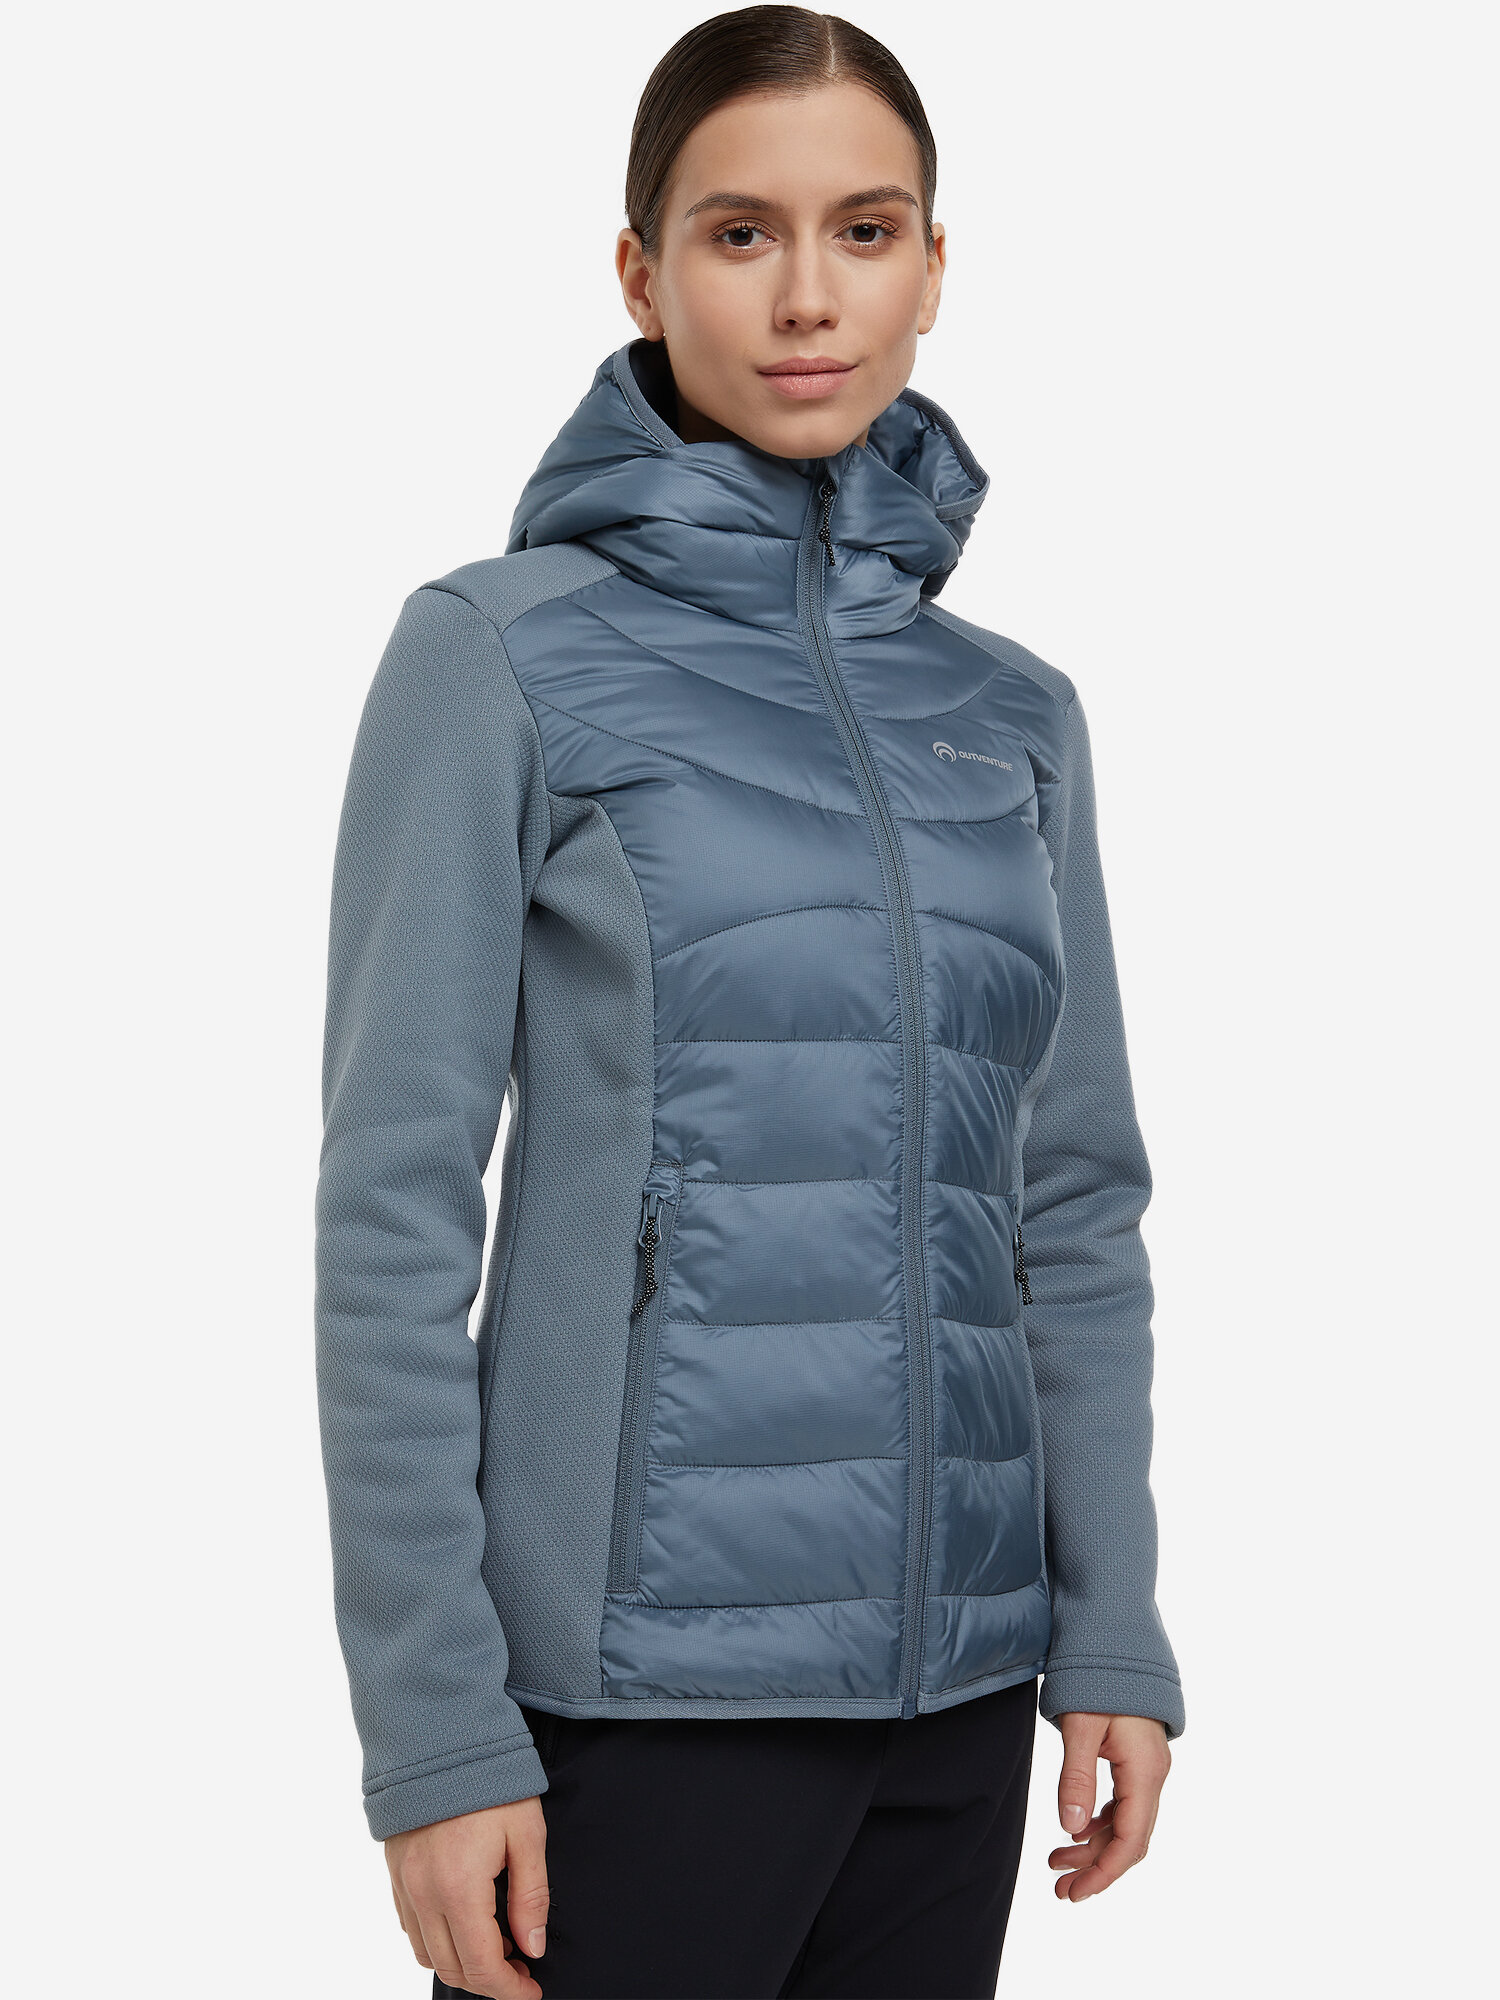 Легкая куртка женская Outventure Бежевый; RU: 50-52 Ориг: 50-52